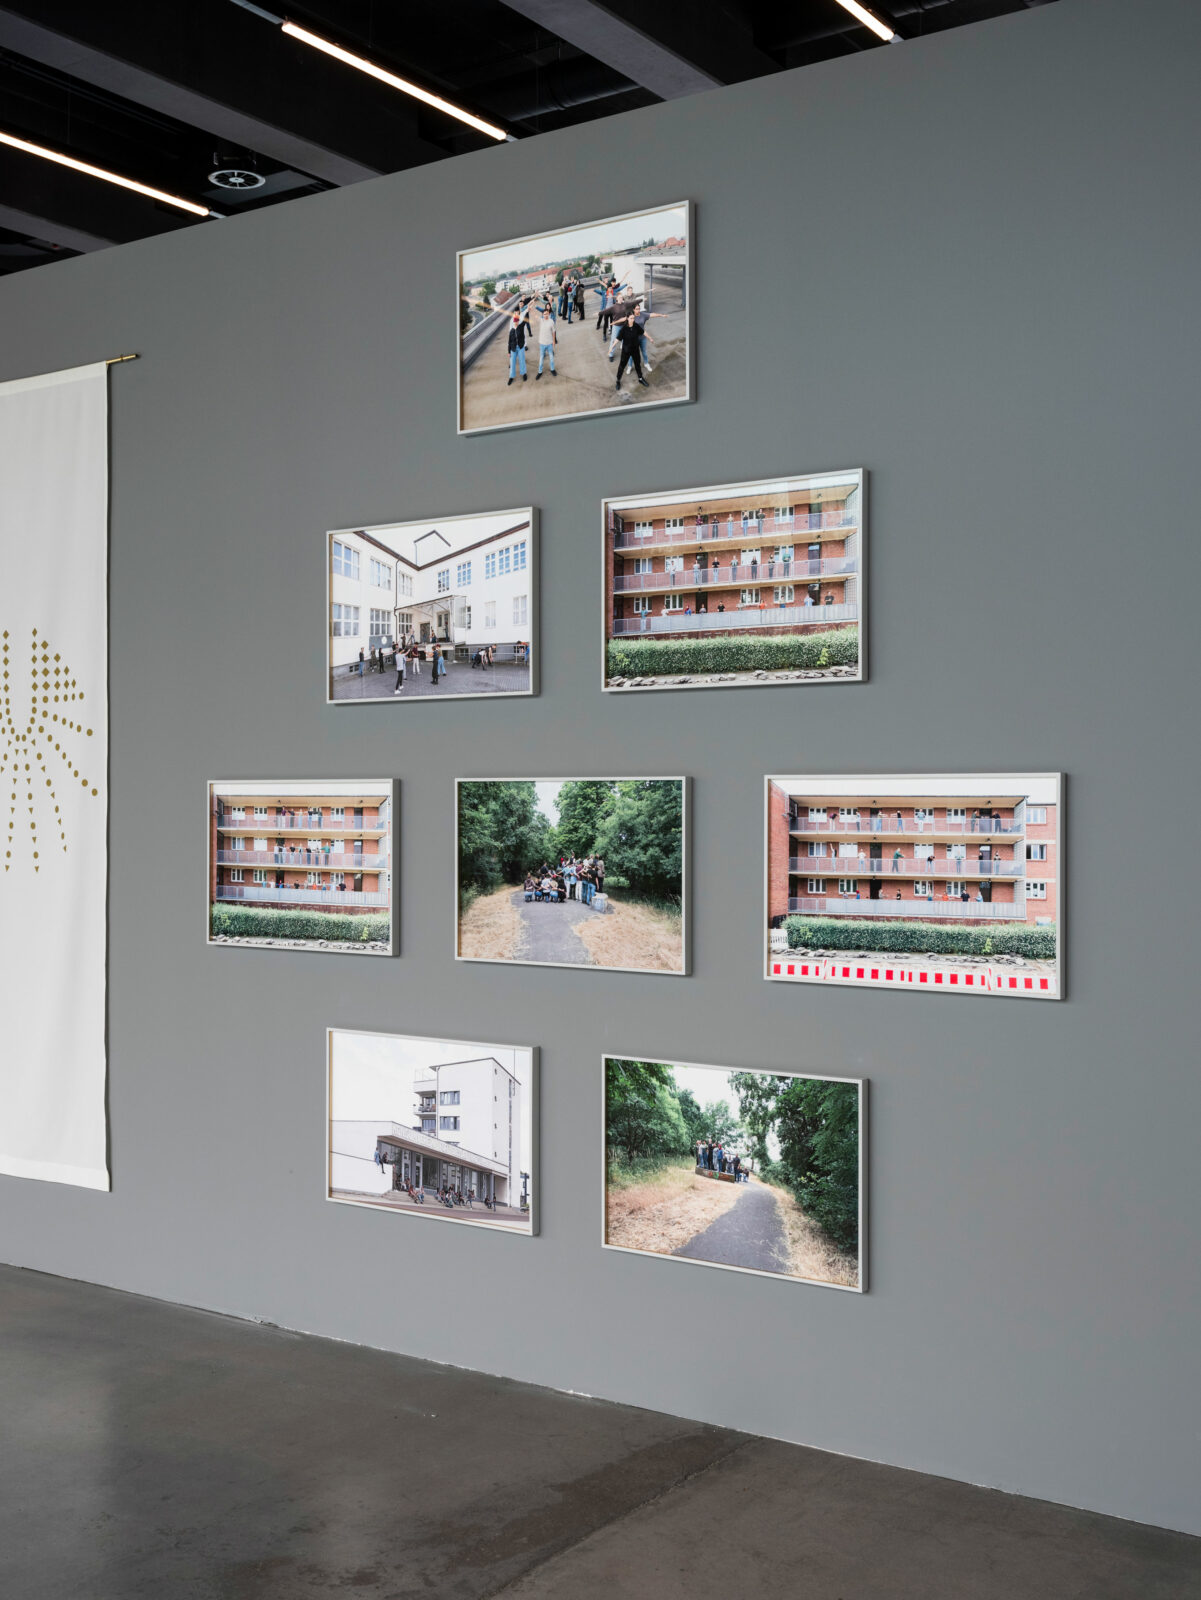 Detailansicht der Fotodrucke von Christina Werner. Sie zeigen Menschengruppen an verschiedenen Orten in Dessau.